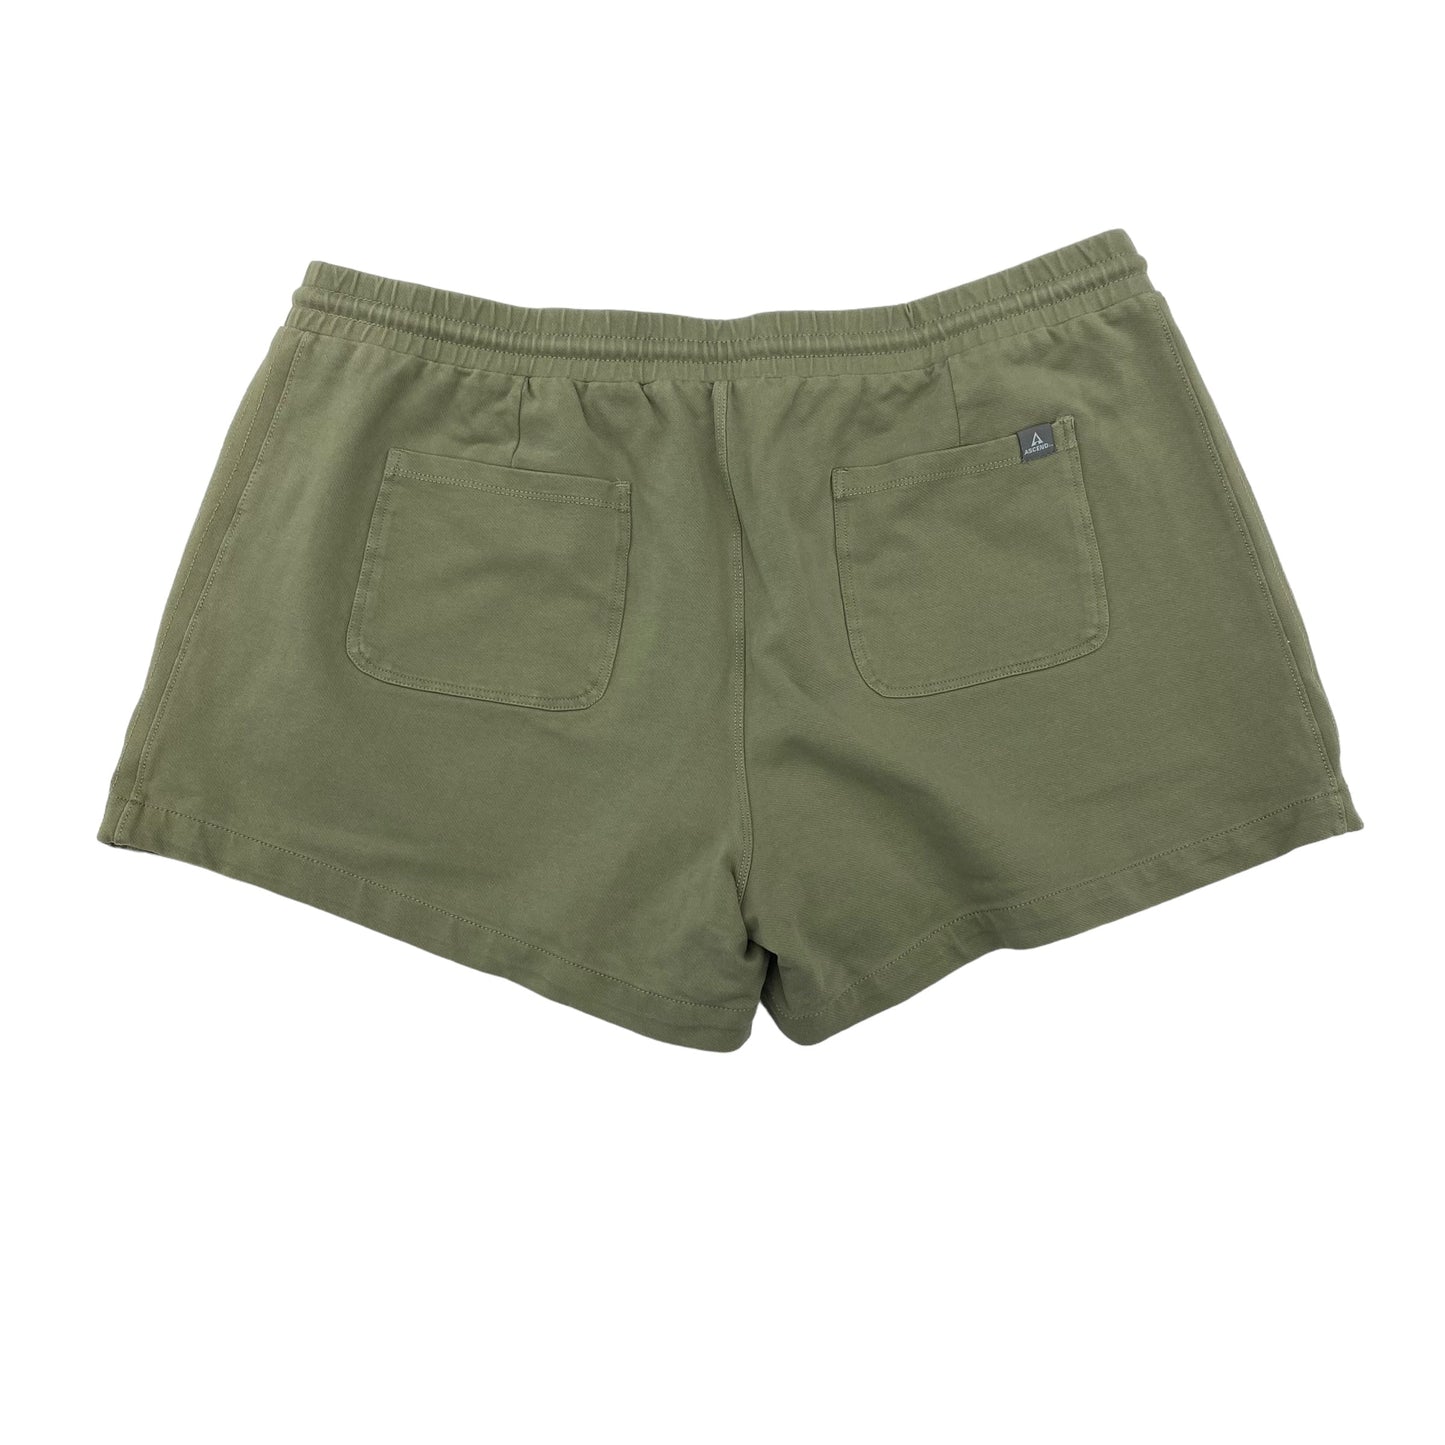 Green Shorts Clothes Mentor, Size Xl